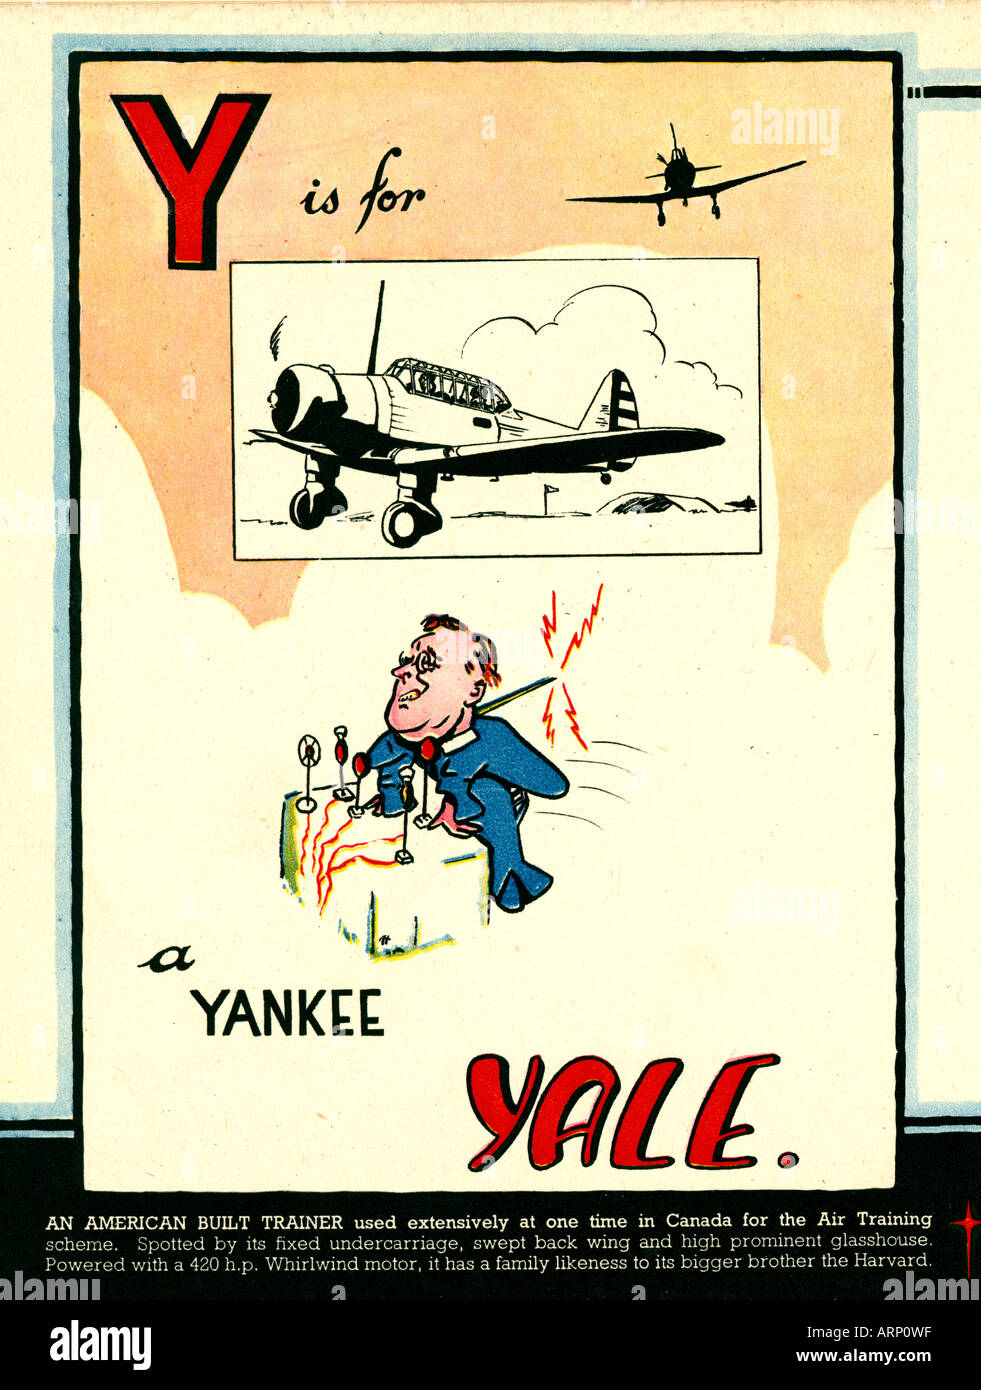 Y ist für Yankee Yale 1943 englische Kriegszeit Alphabet Kinderbuch der kämpfenden Flugzeuge der amerikanischen Trainer als FDR Stockfoto